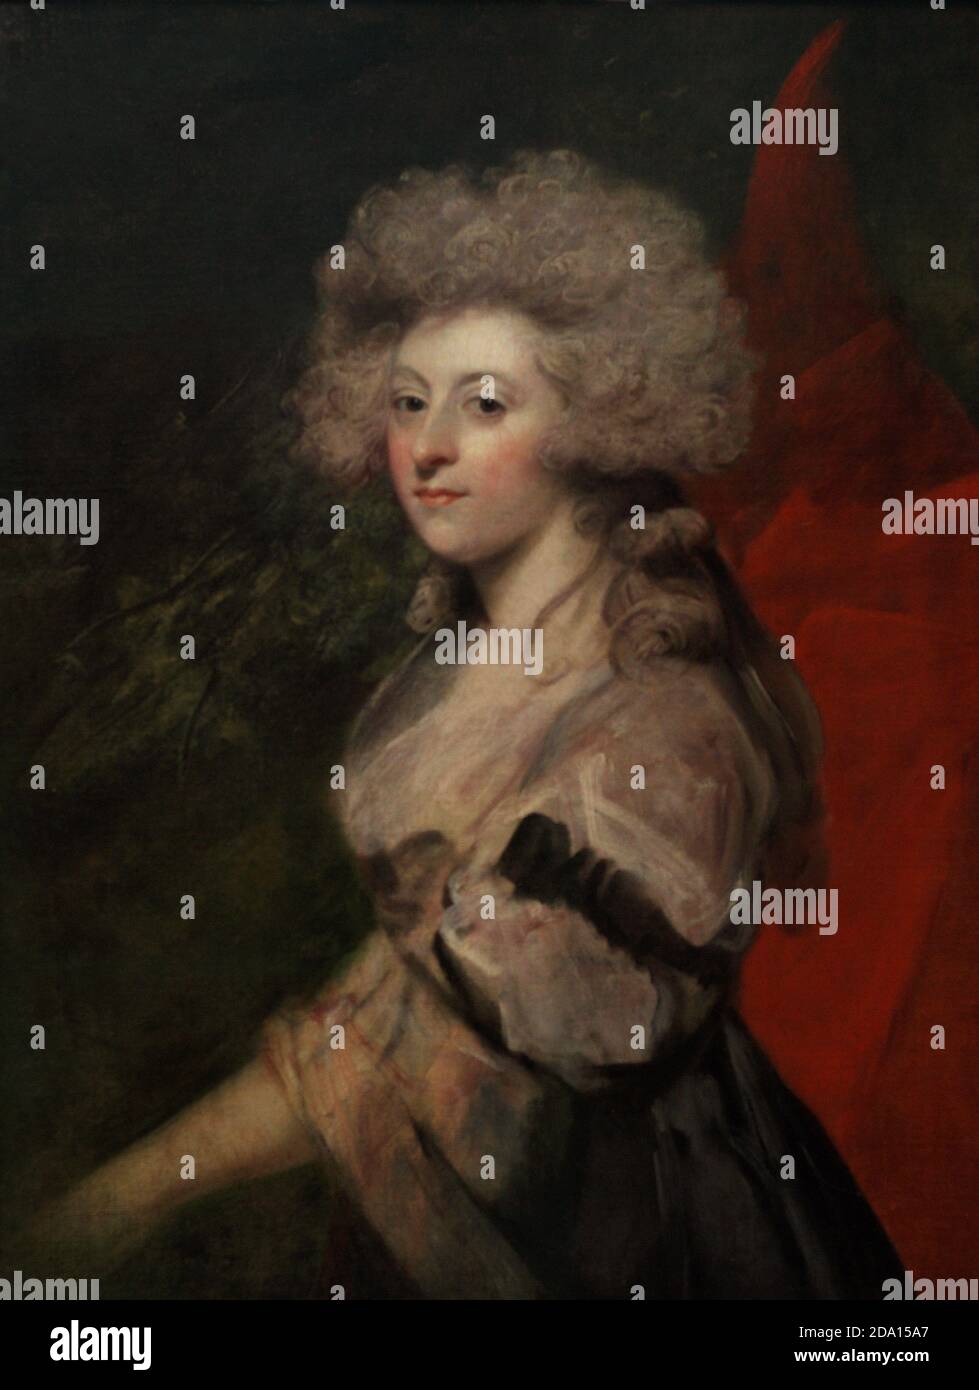 Maria Anne Fitzherbert (1756-1837). Esposa secreta del príncipe de Gales, el futuro rey Jorge IV del Reino Unido. Retrato de Sit Joshua Reynolds (1723-1792). Óleo sobre lienzo (91,4 x 71,1 cm), c. 1788. Galería Nacional de Retratos. Londres, Inglaterra, Reino Unido. Foto de stock